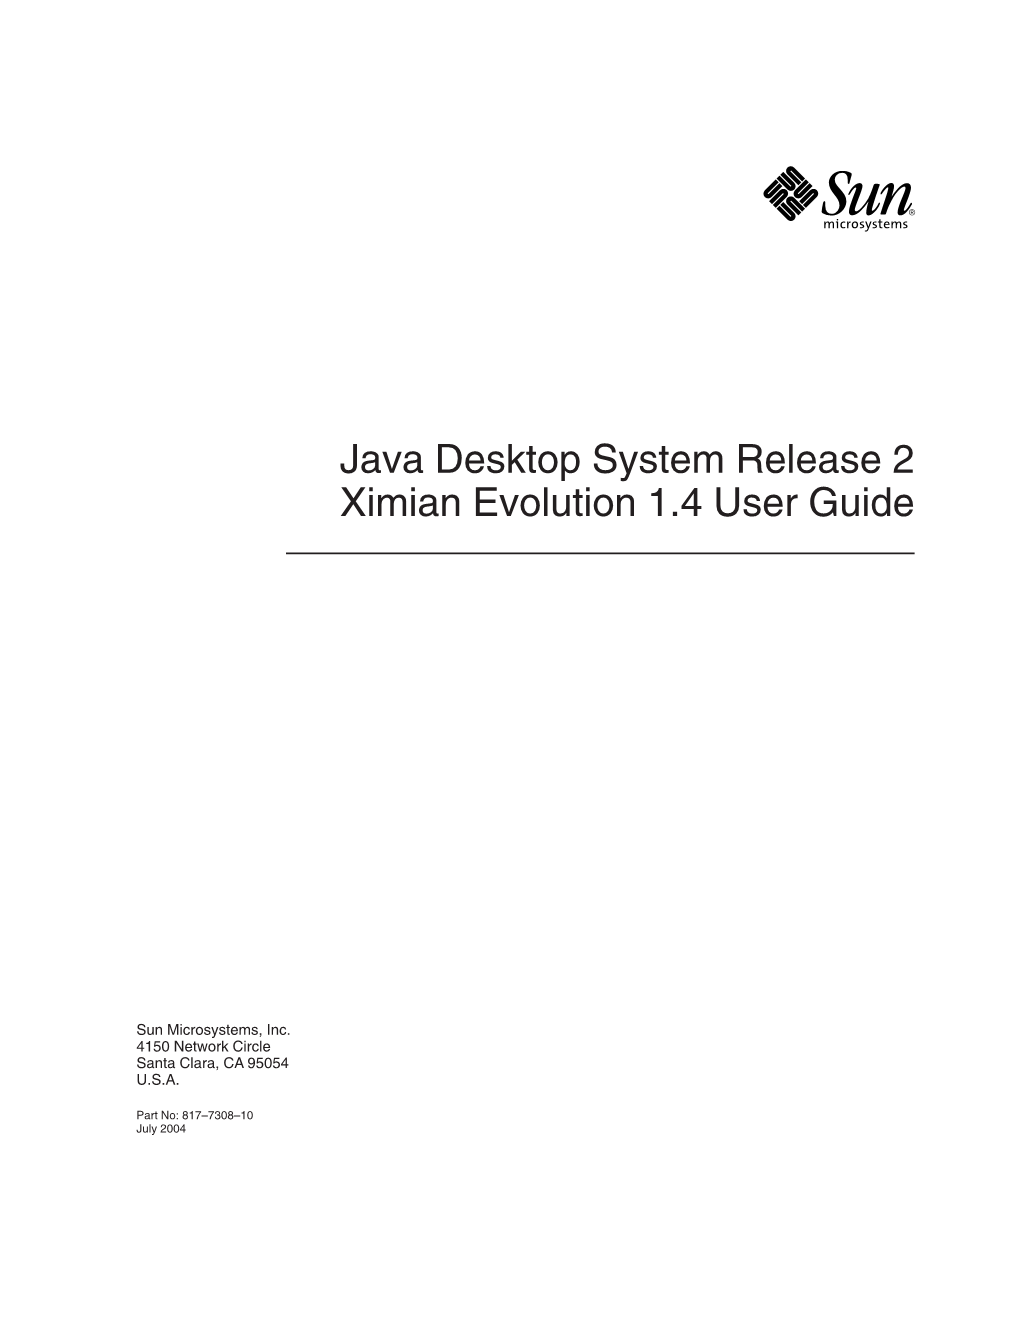 Java Desktop System Release 2 Ximian Evolution 1.4 User Guide